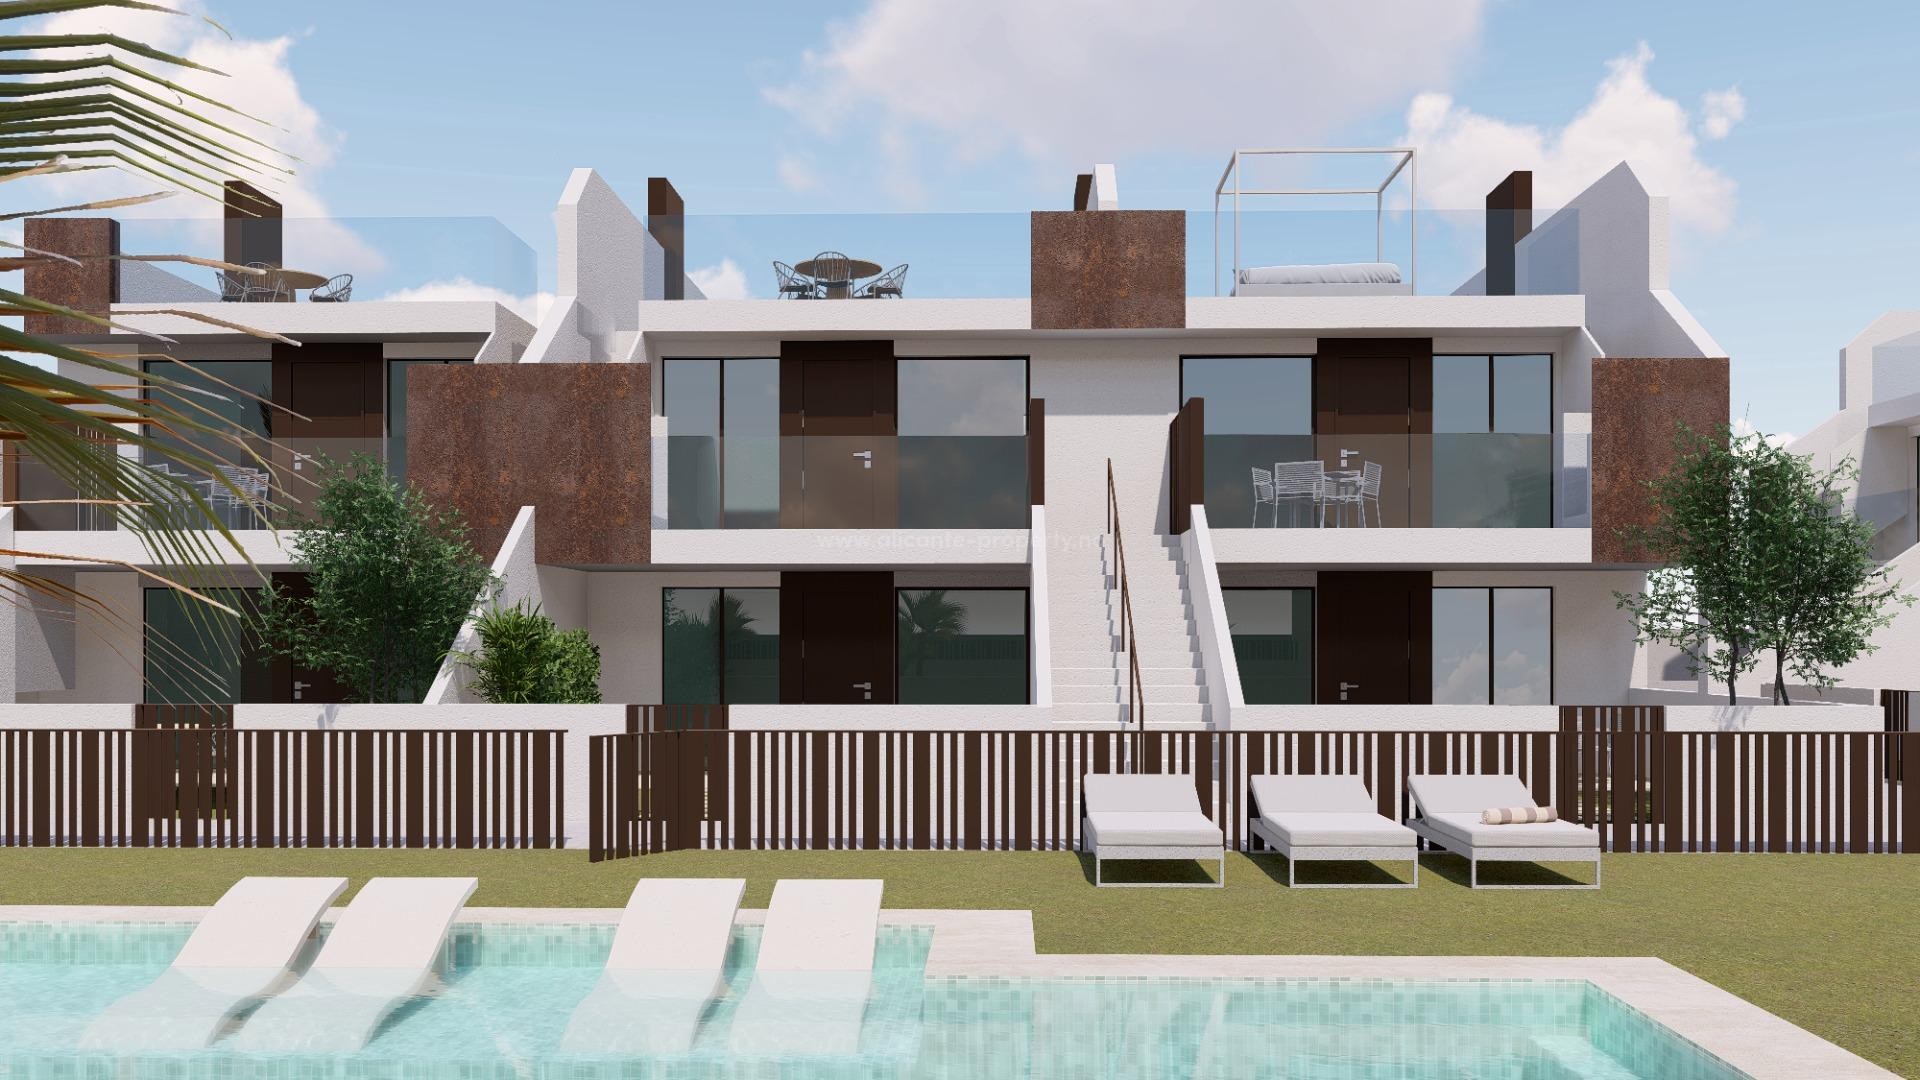 22 moderne bungalows-leiligheter i Pilar de La Horadada, 2 soverom, 2 bad, stor hage første etasje, terrasse/solarium i øverste etasje, felles basseng